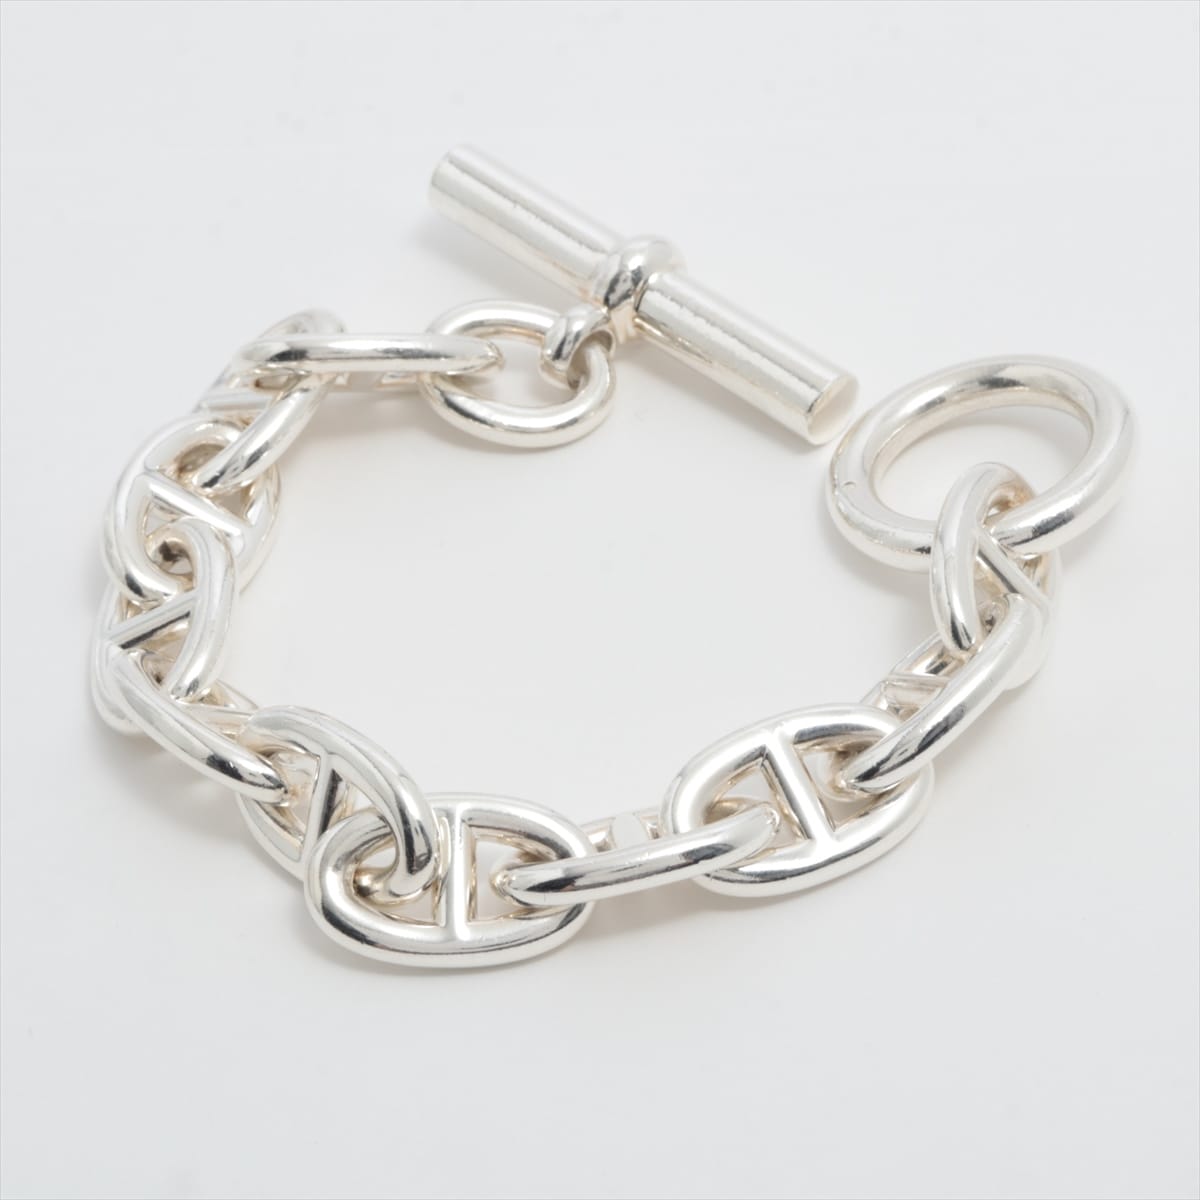 Hermès Chaîne d'Ancre TGM Bracelet 925 103.1g Silver 11 frames